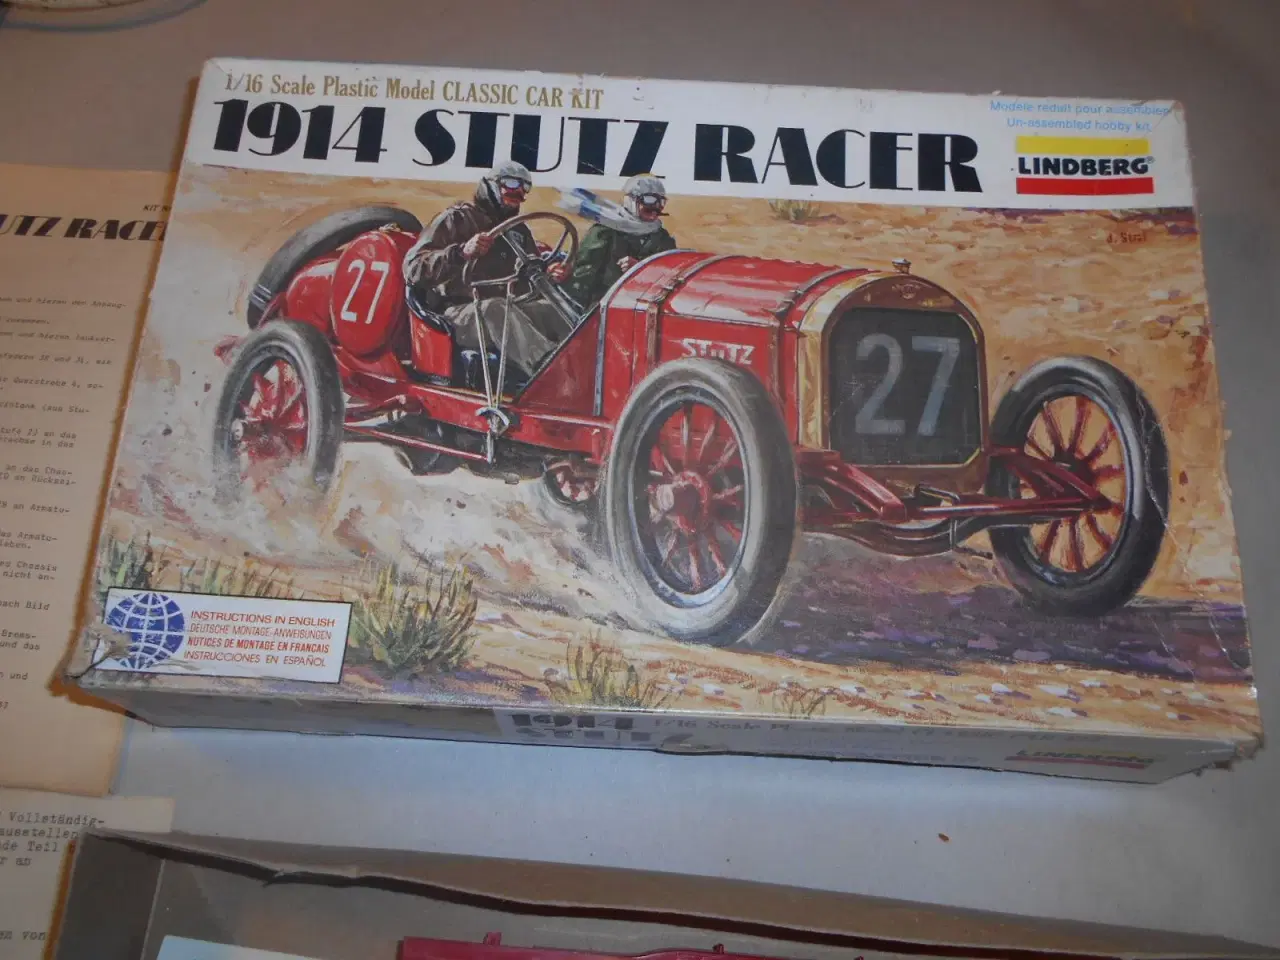 Billede 1 - 1914 Stutz Racer. Modelbil-1/16